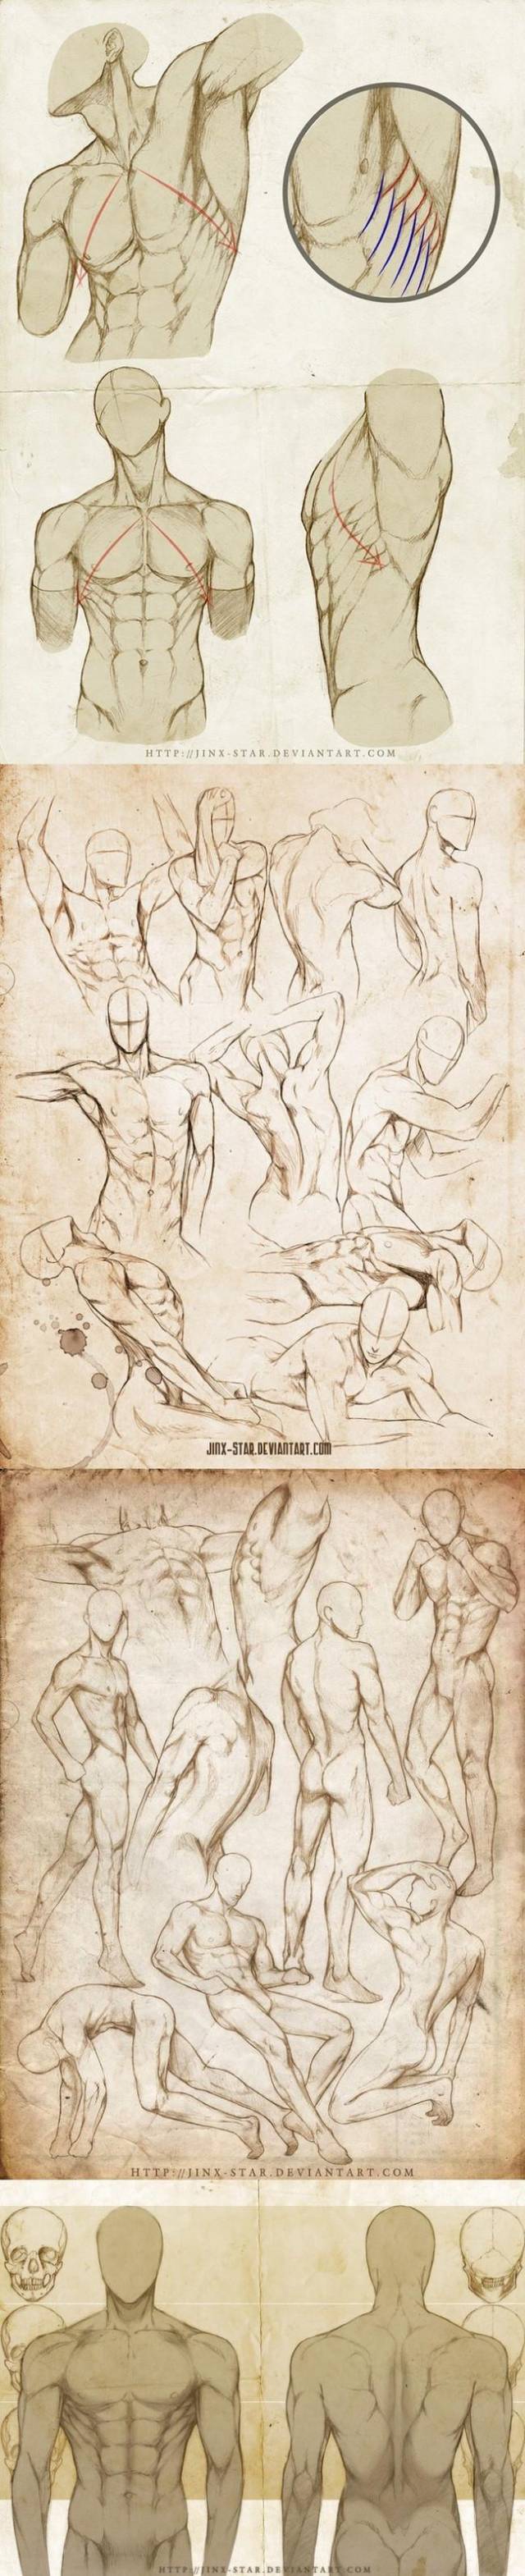 漫画男人体怎么画人体结构教程轻微课绘画网址